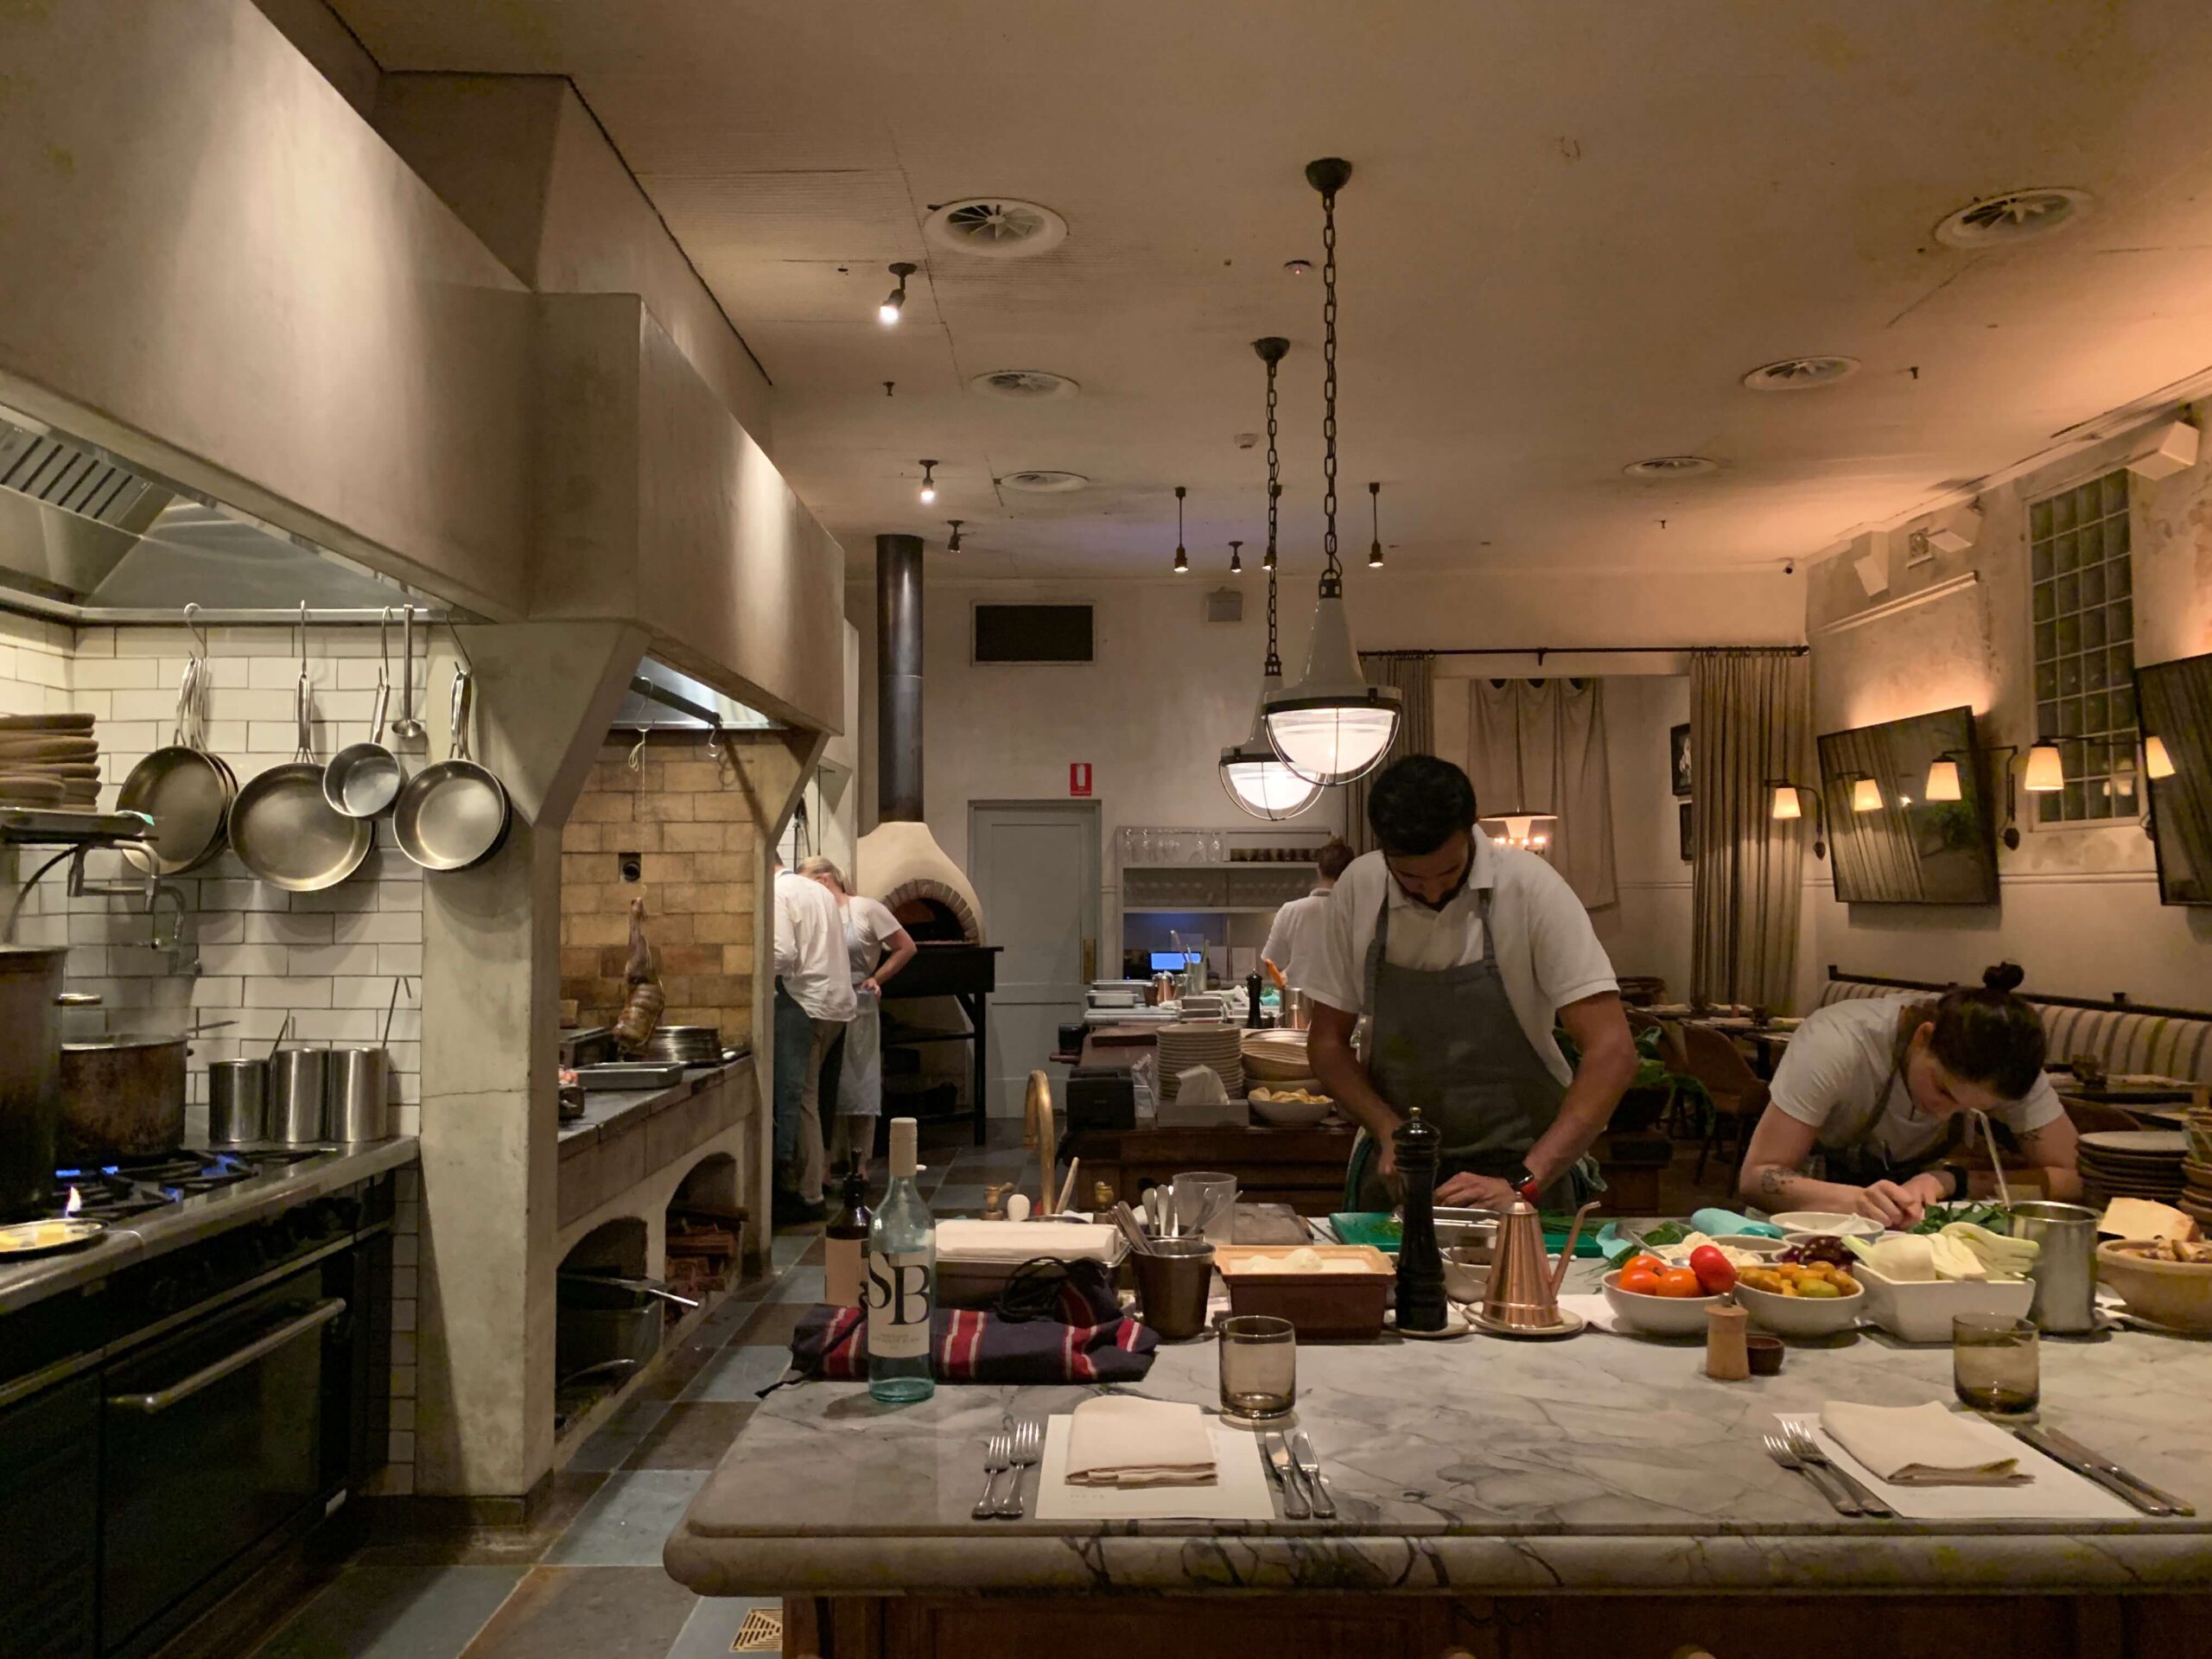 シドニーのレストラン【FRED'S】のオープンキッチンの様子を撮影した写真